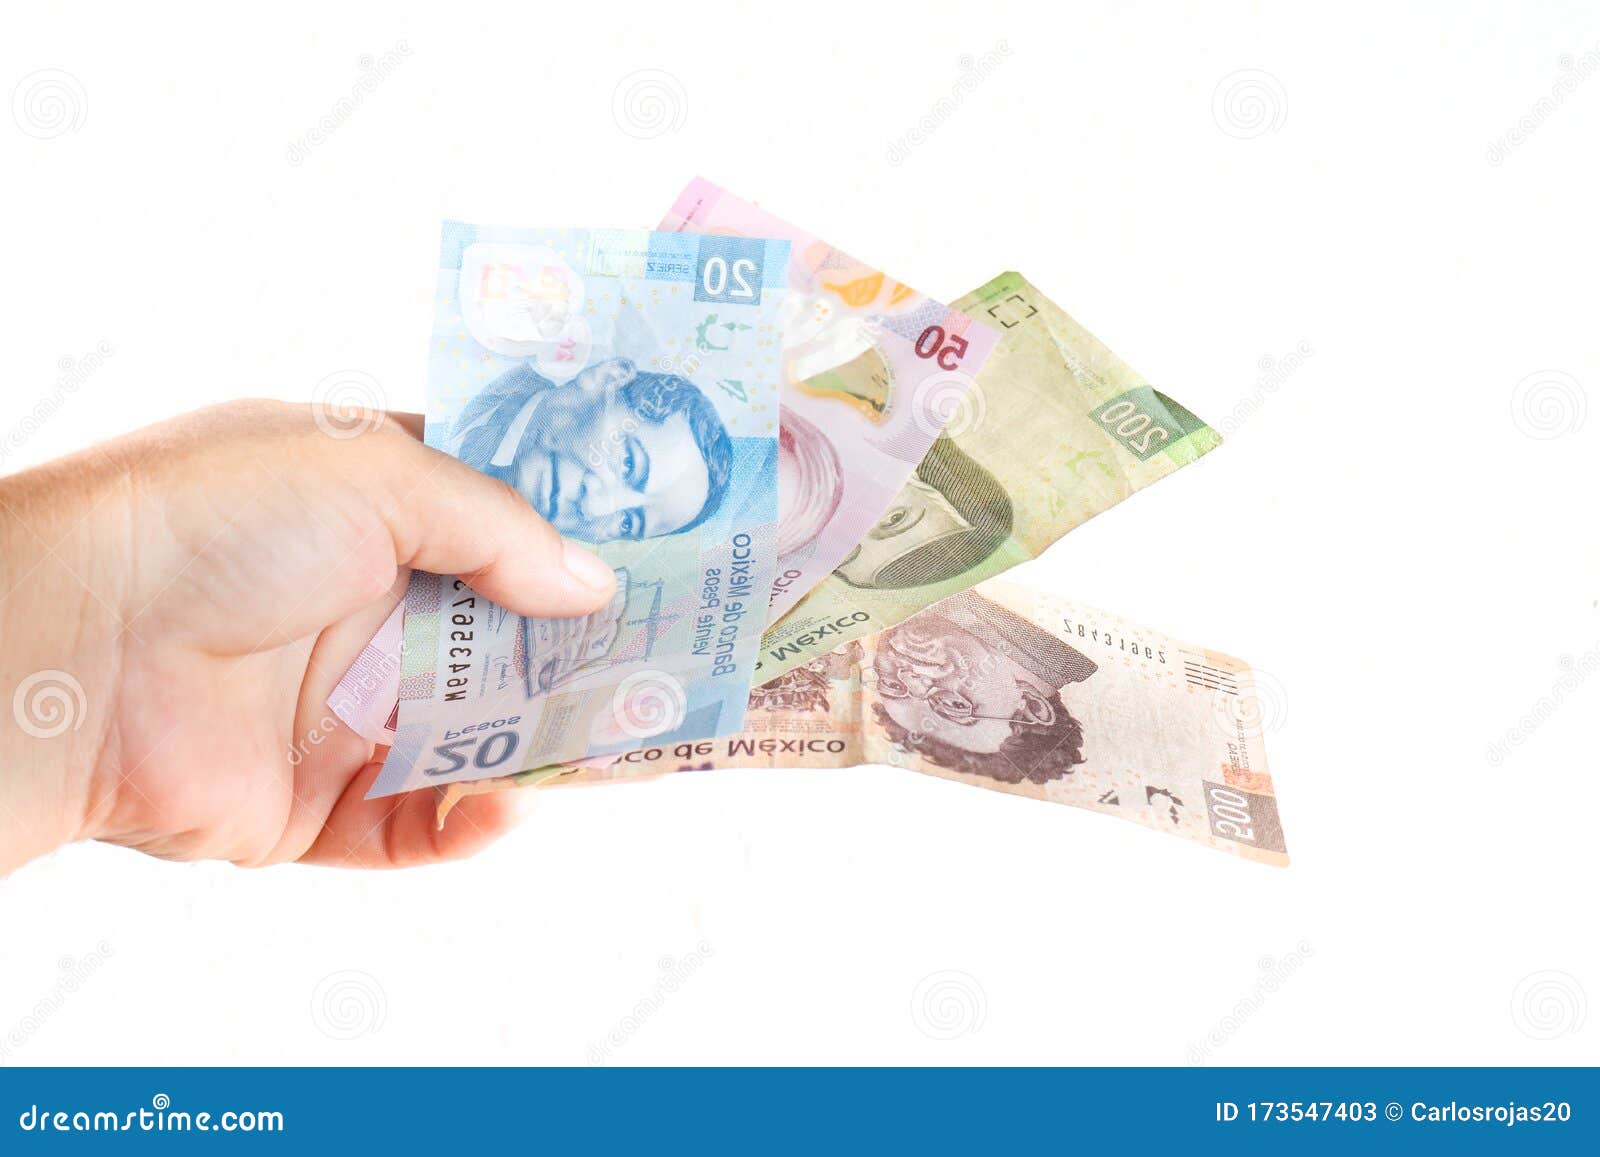 current mexican pesos